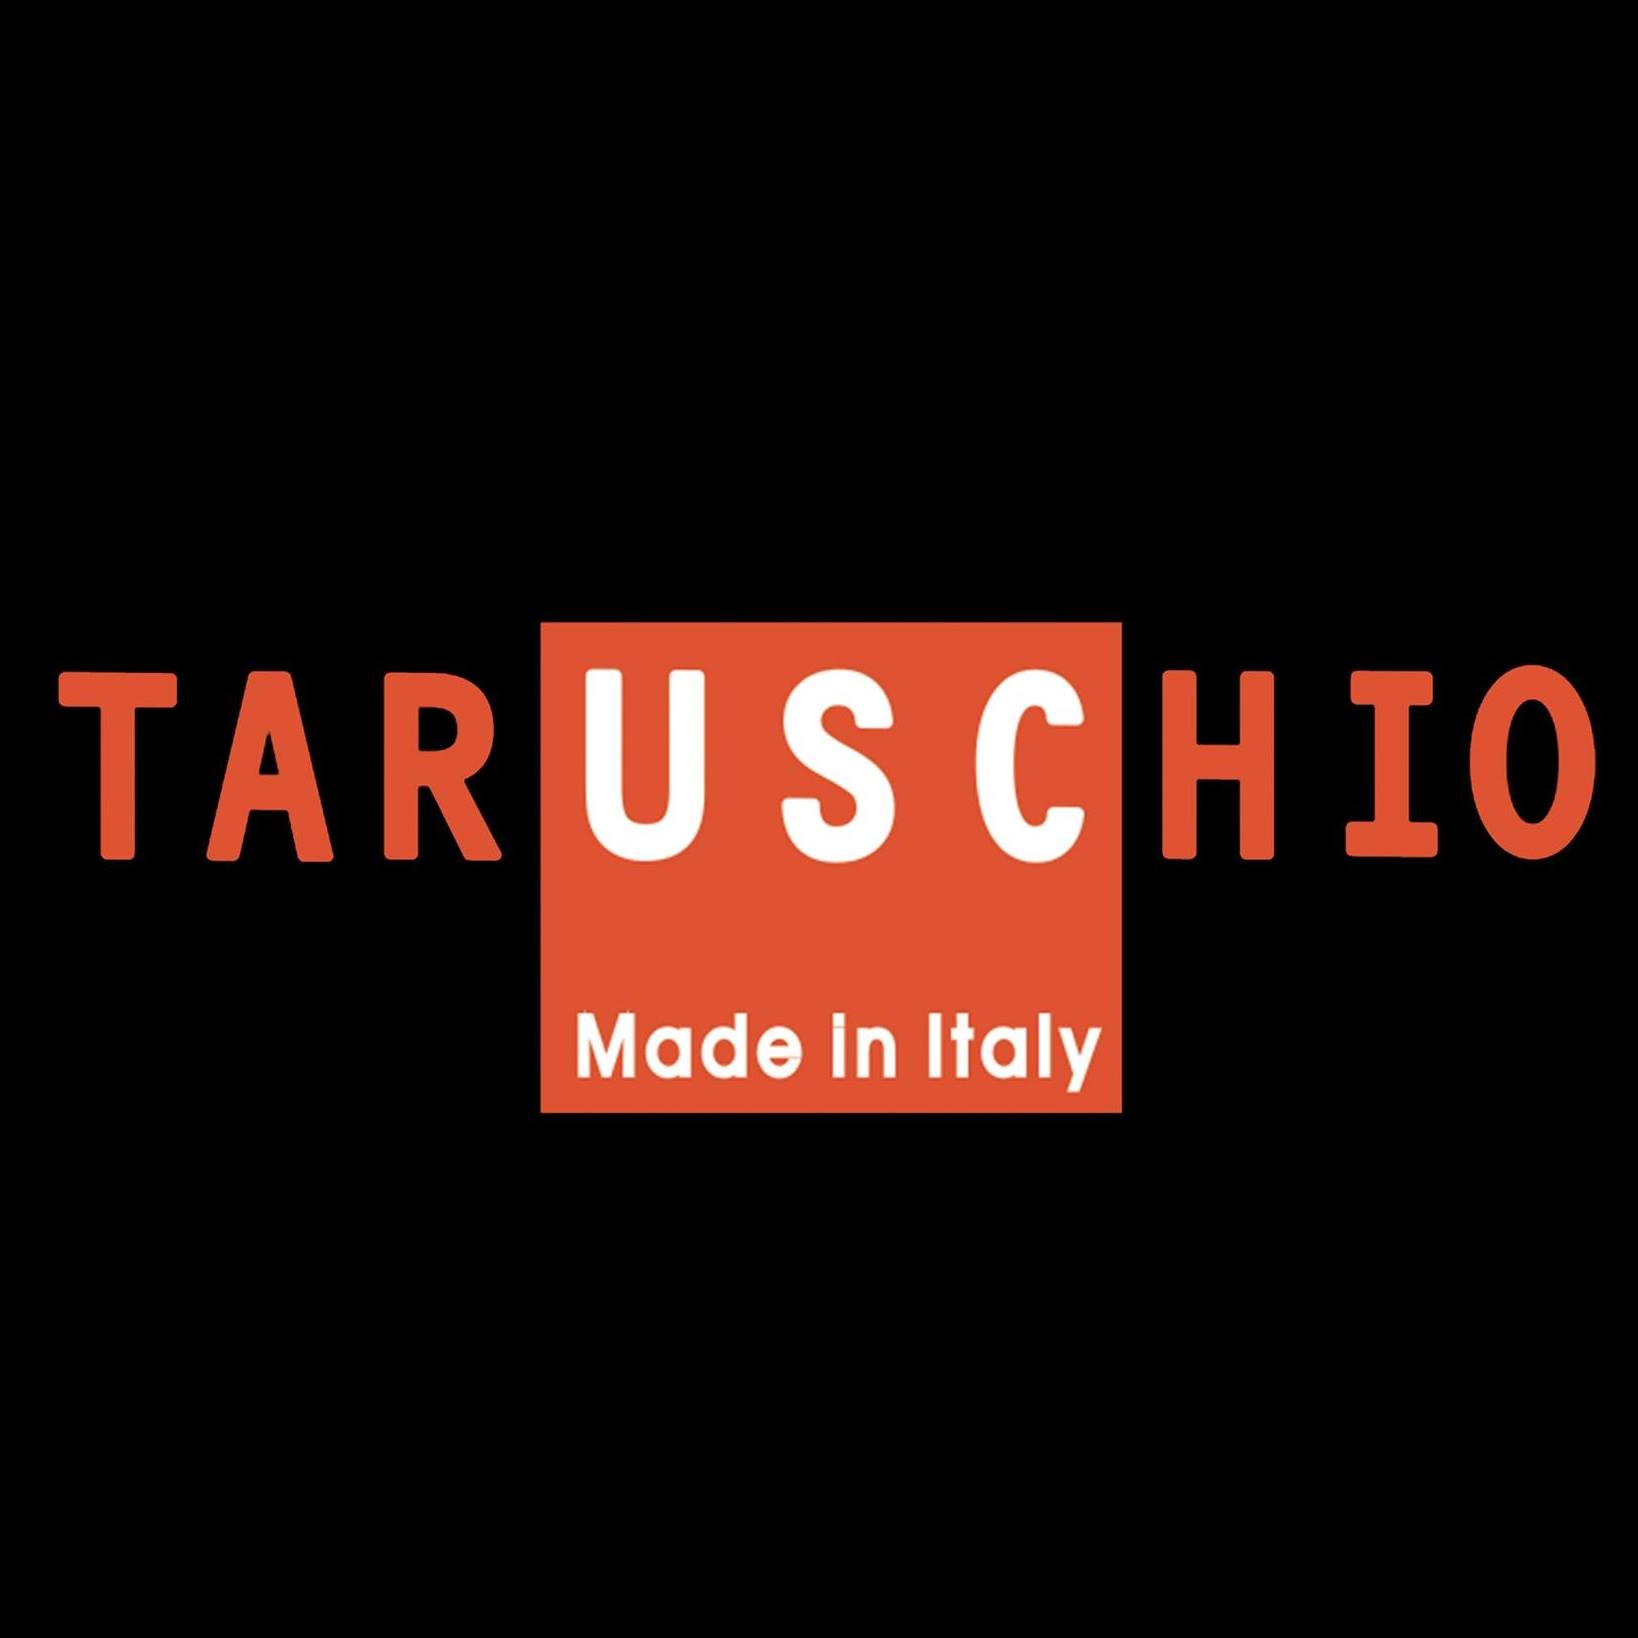 Taruschio arte e ceramica made in Italy